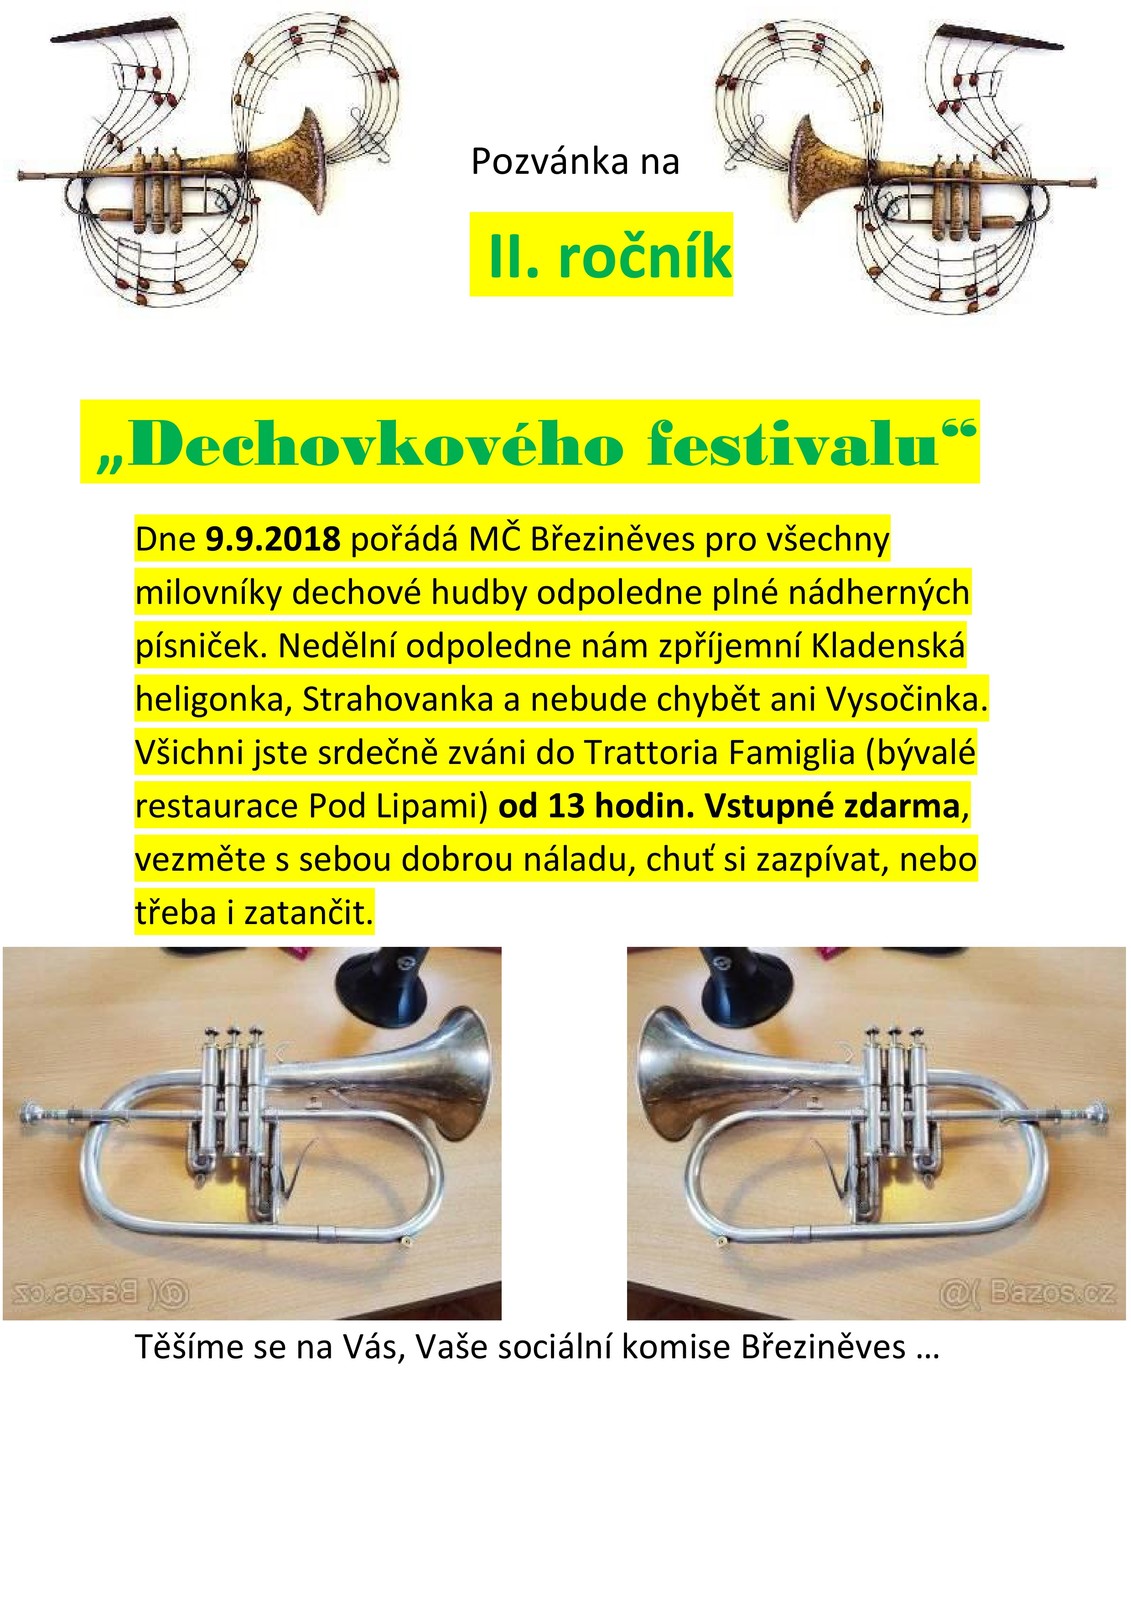 Pozvánka na dechovkový festival Březiněves_2018.jpg